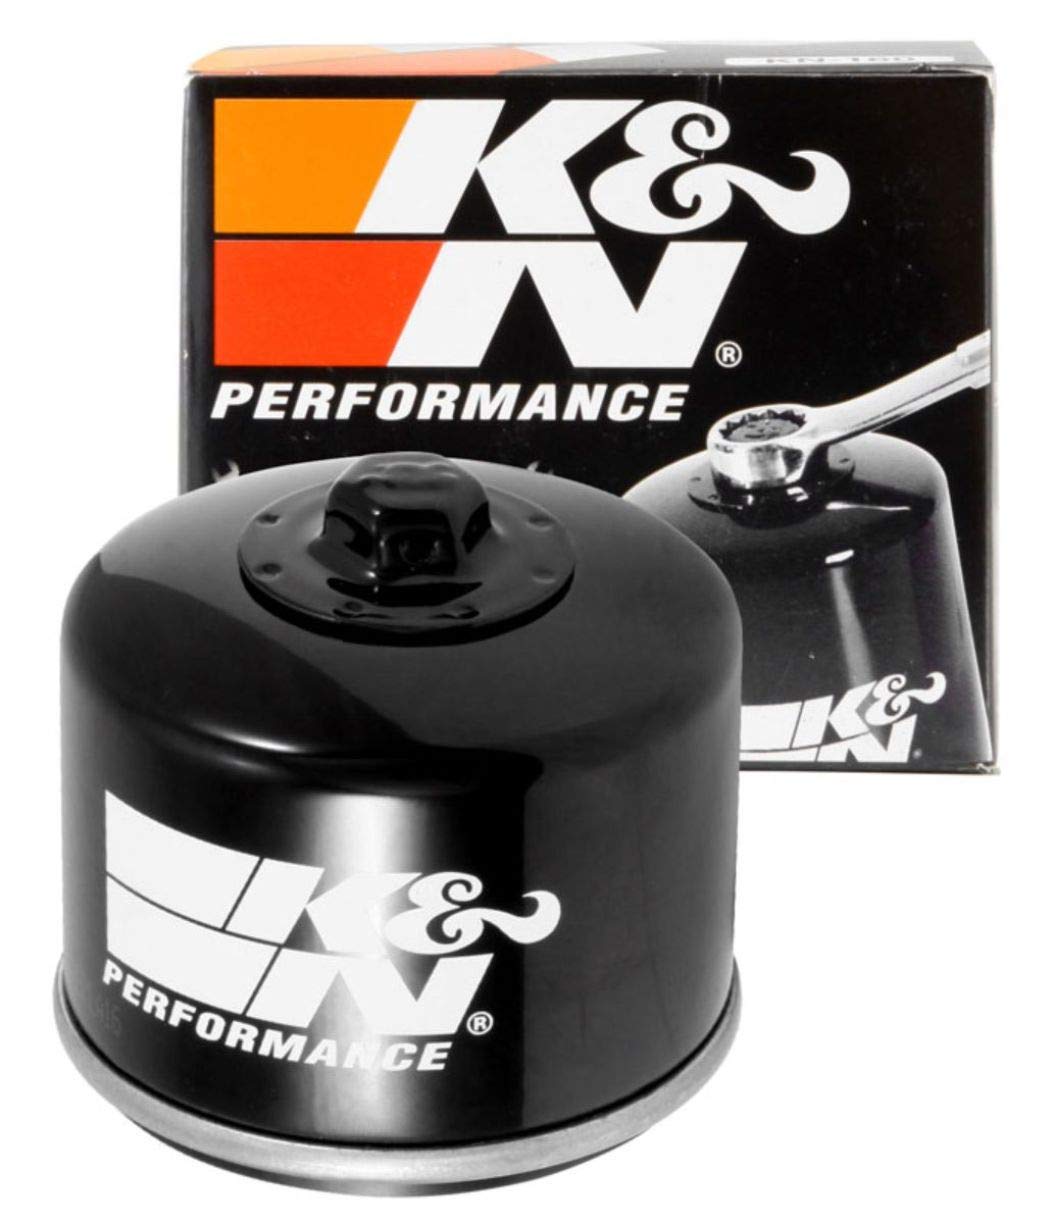 K&N Ölfilter für Motorräder: Entwickelt für die Verwendung mit Synthetischen Oder Konventionellen Ölen. Für Ausgewählte BMW, Bimota, Husqvarna Motorräder KN-160 (Patrone 79x71mm). von K&N